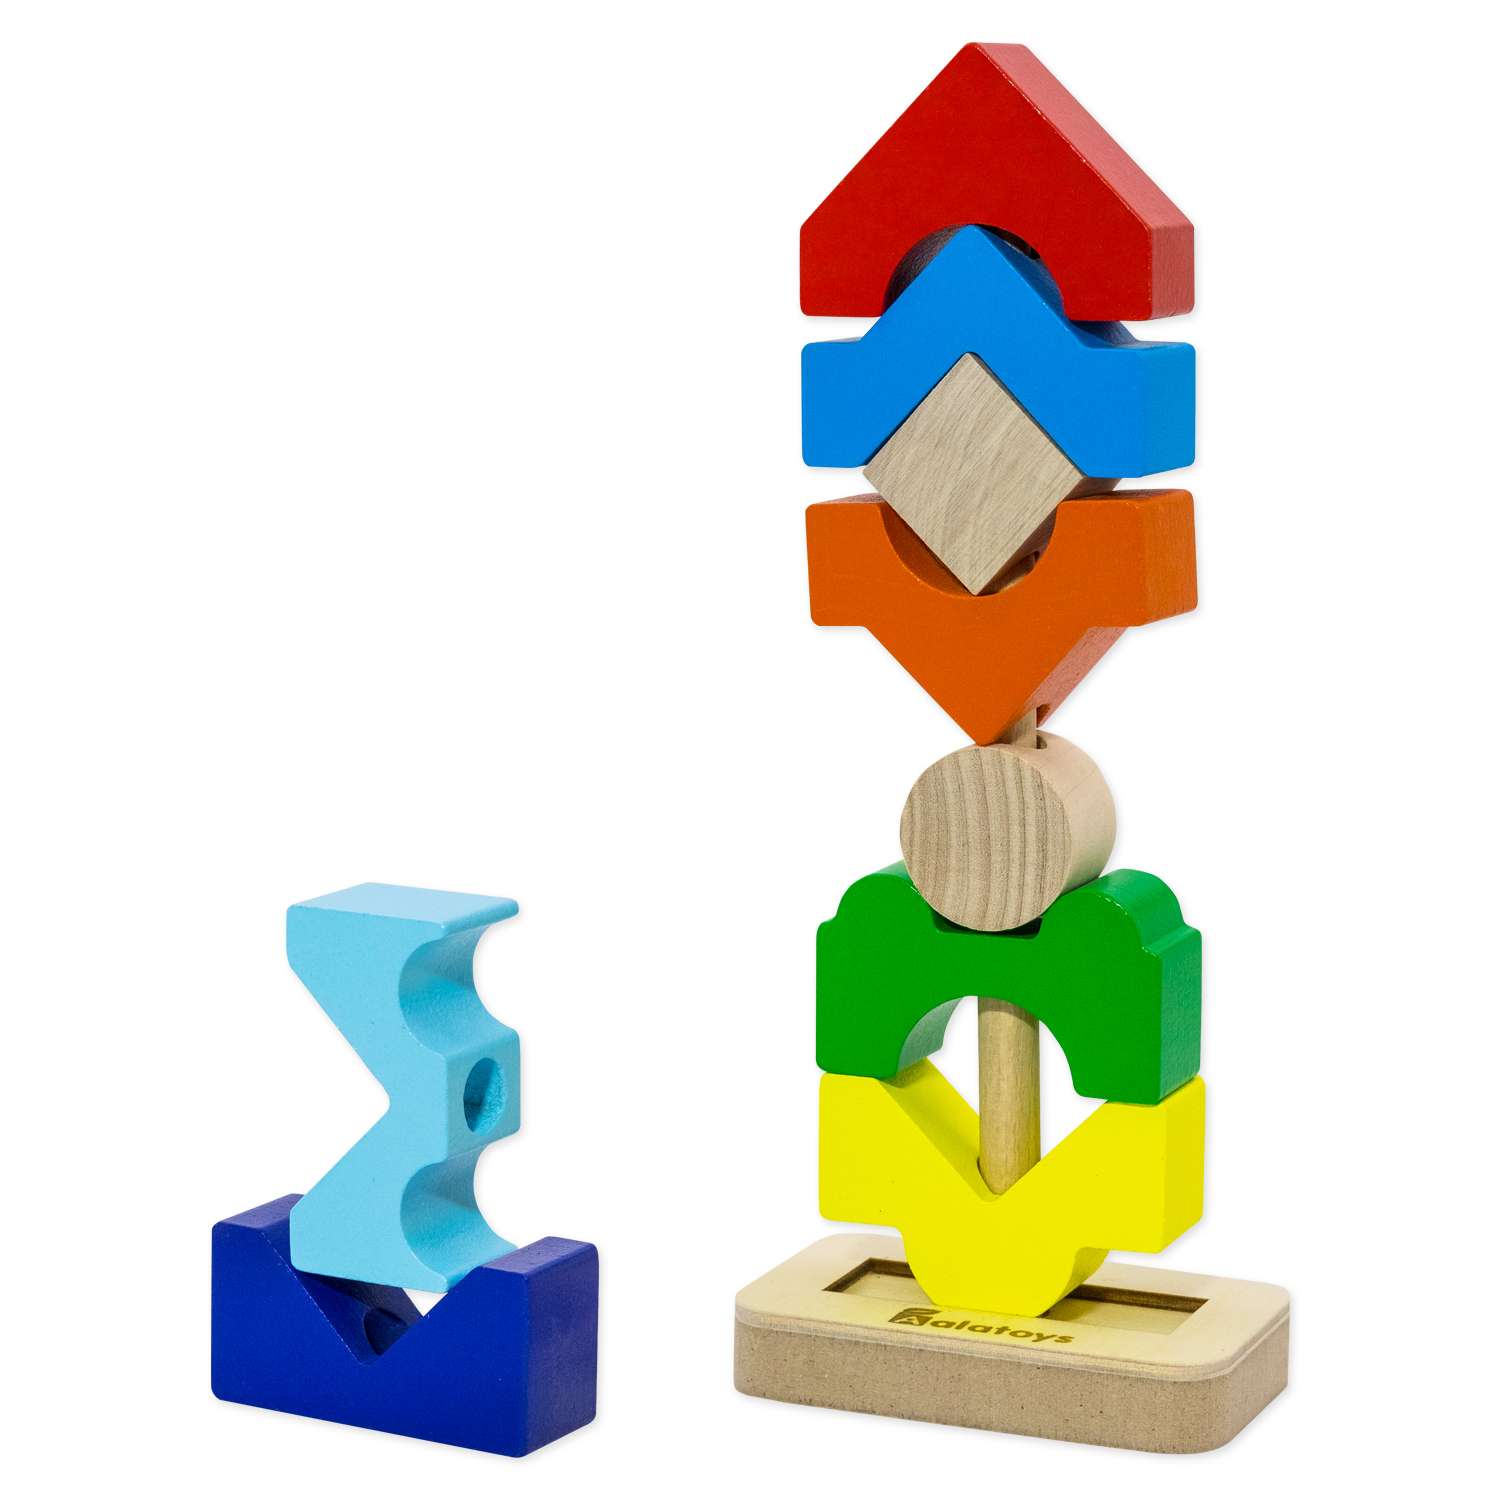 Пирамидка деревянная Башня Alatoys развивающая обучающая Монтессори игрушка для малышей - фото 13